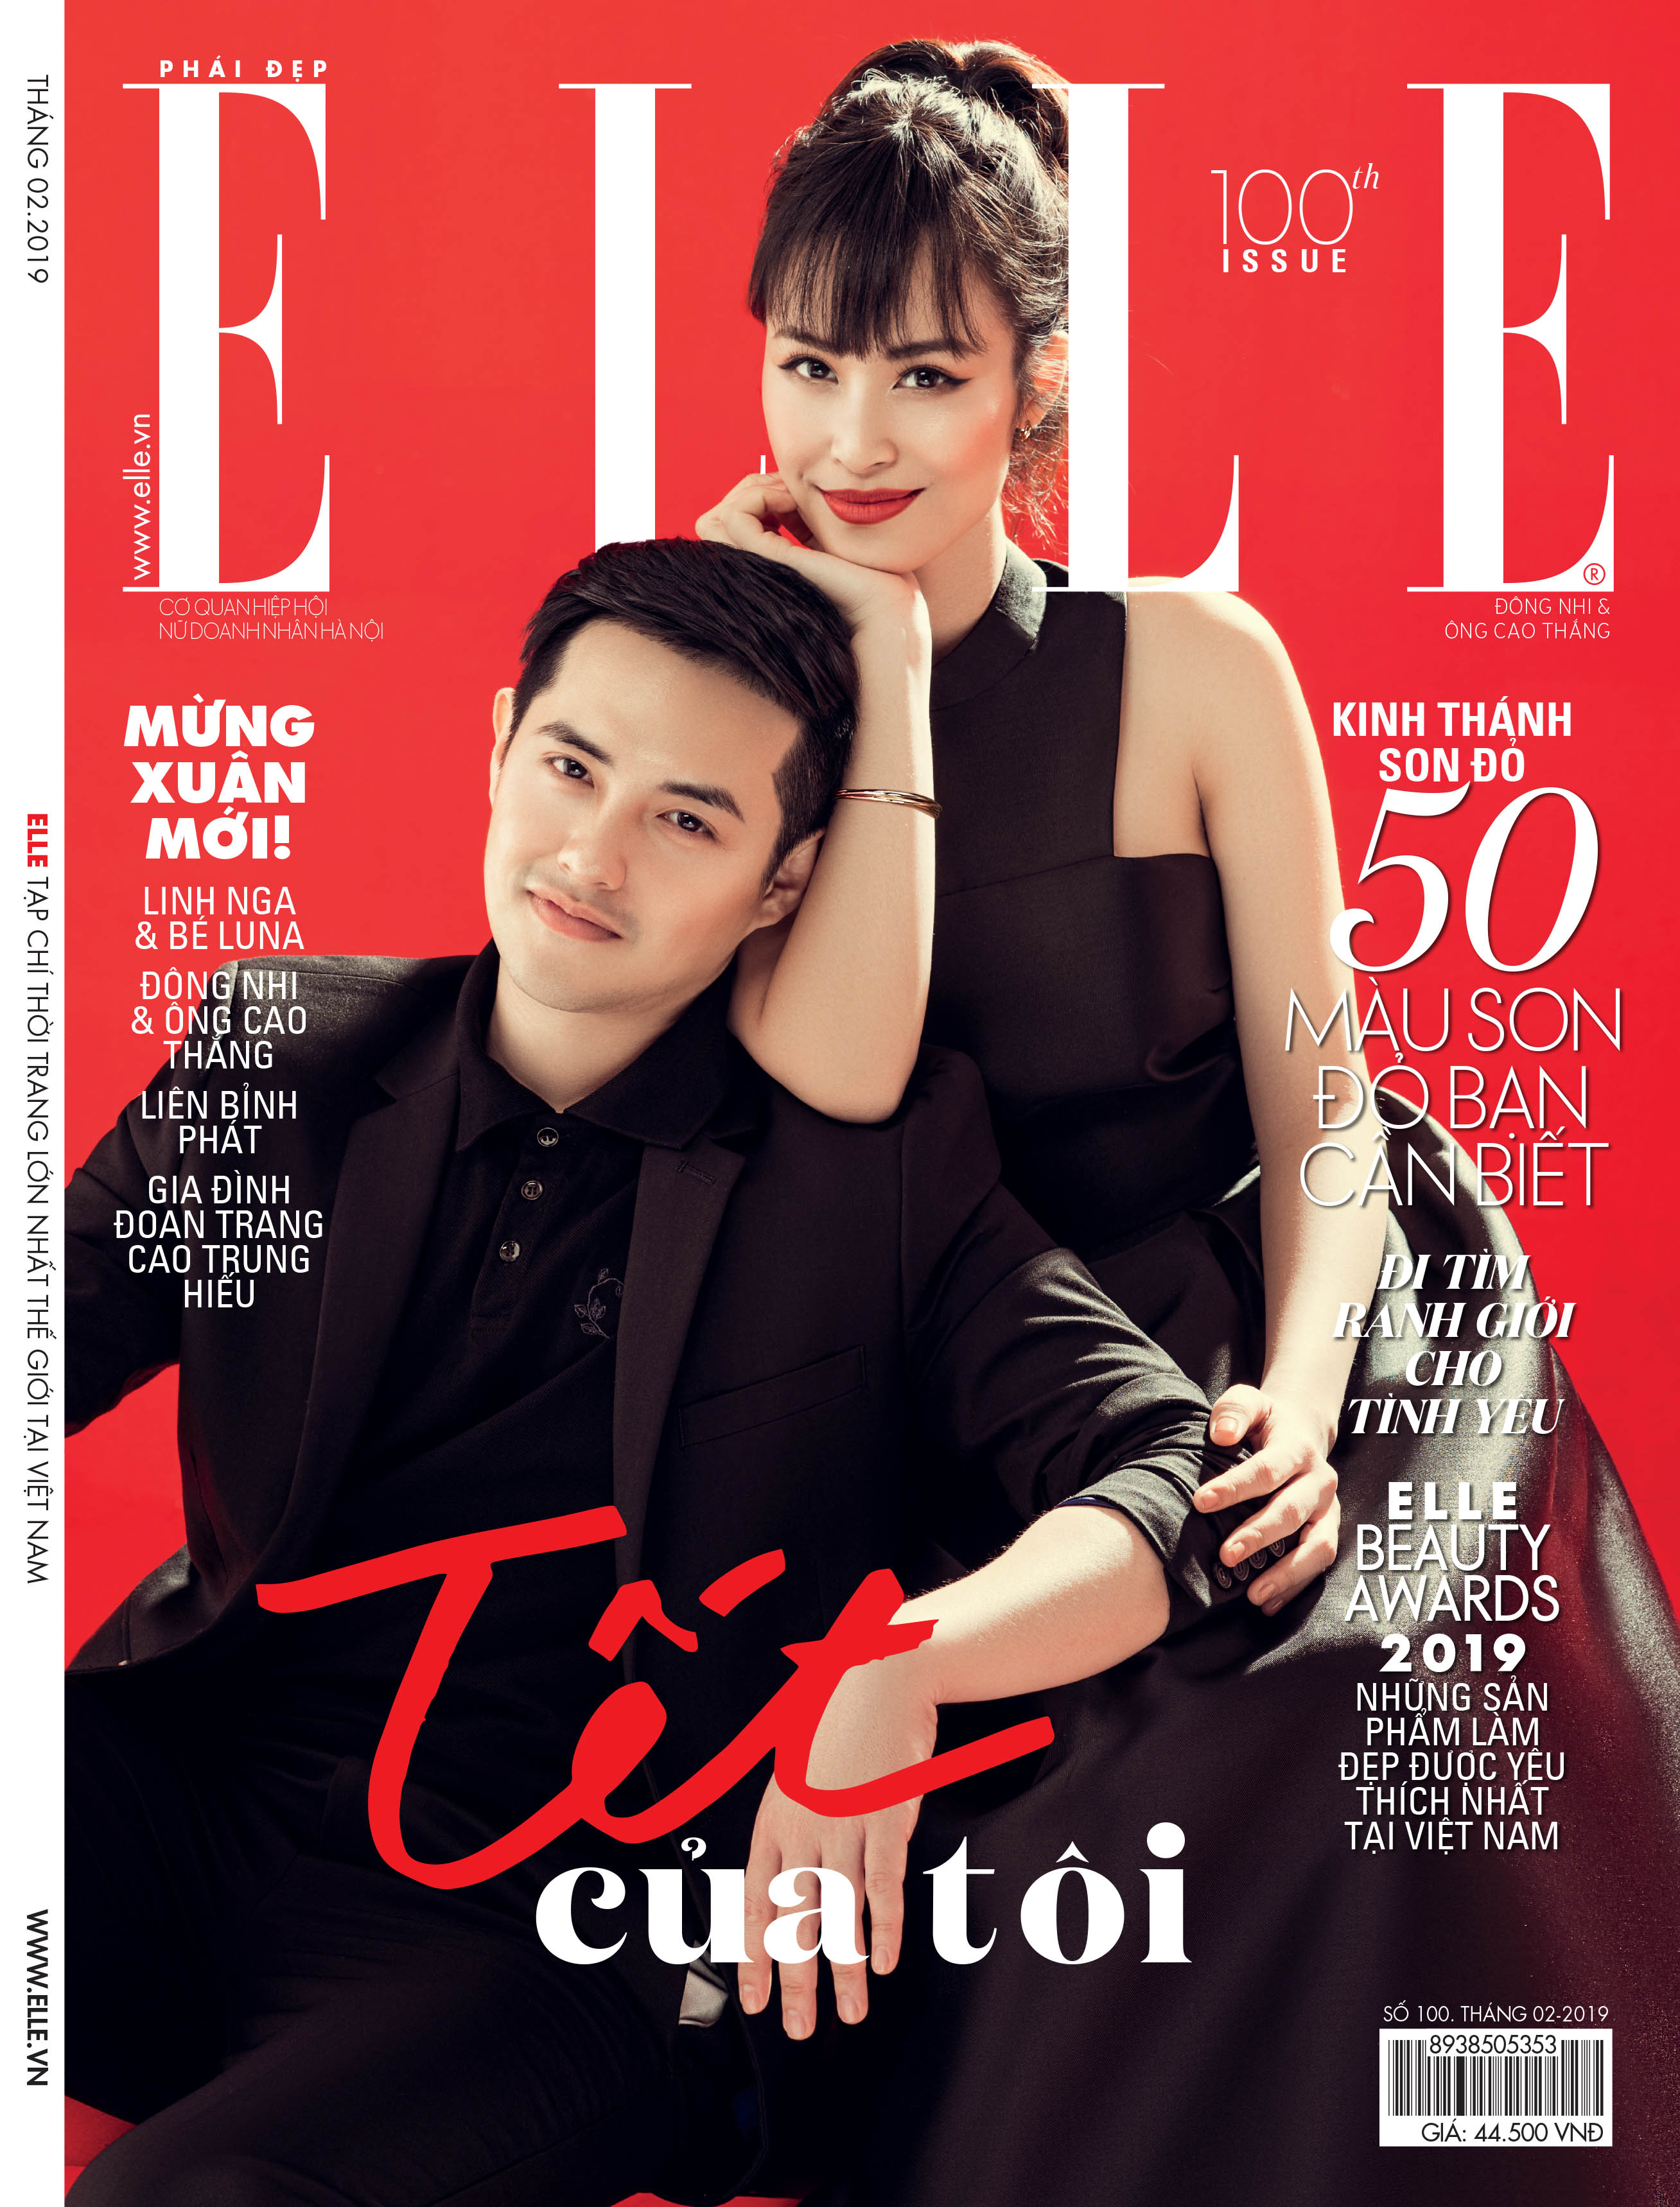 ELLE-STYLE-AWARDS-2019- Trang bìa ELLE Đông Nhi và Ông Cao Thắng-